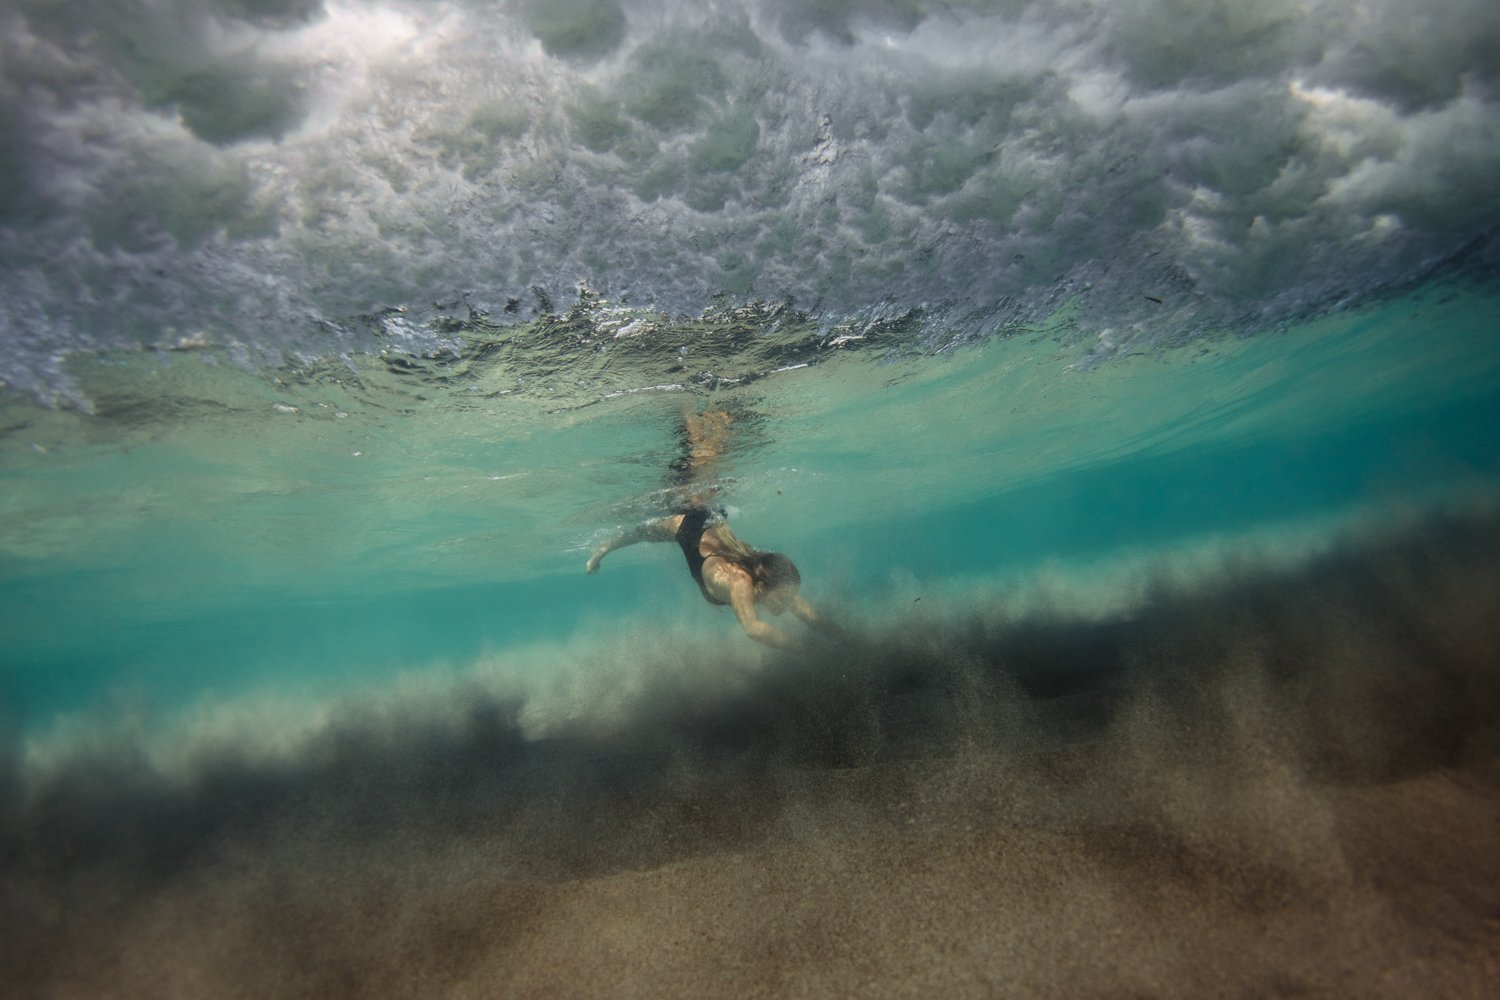 summer underwater corse corsica sea mediterranean island france french photographer photographe ajaccio Krista Espino Capo di feno wave femme woman fine art photography swim-40.jpg